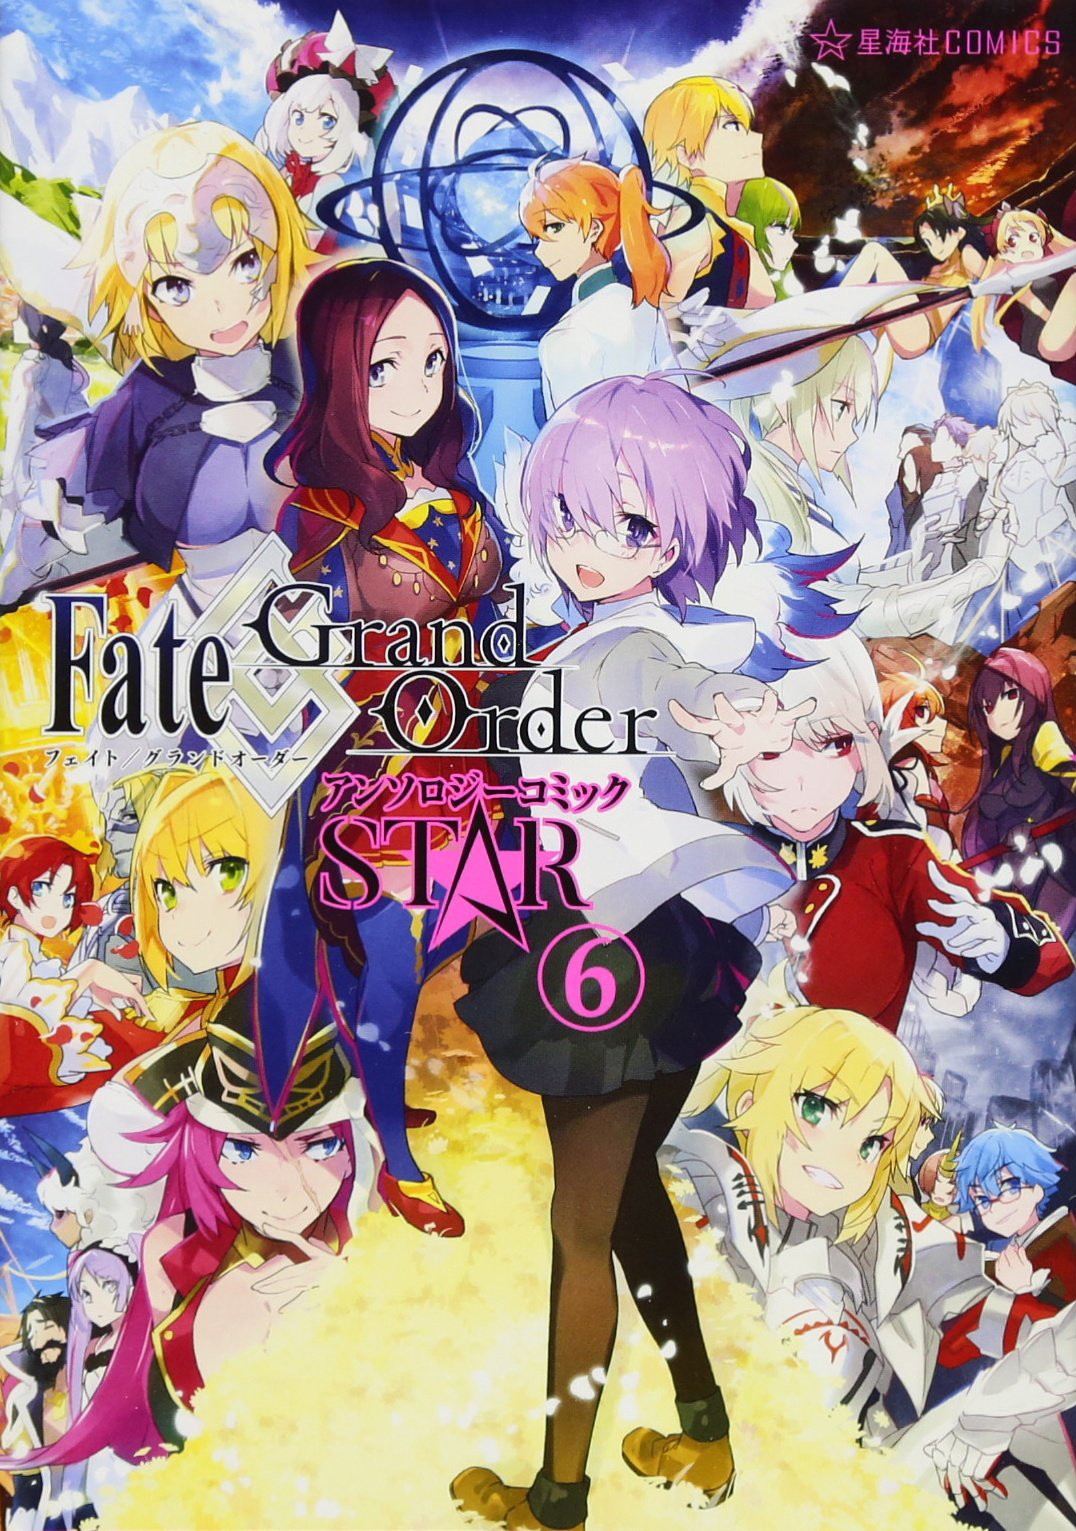 Fate Grand Order 漫畫精選集 STAR 6.jpg